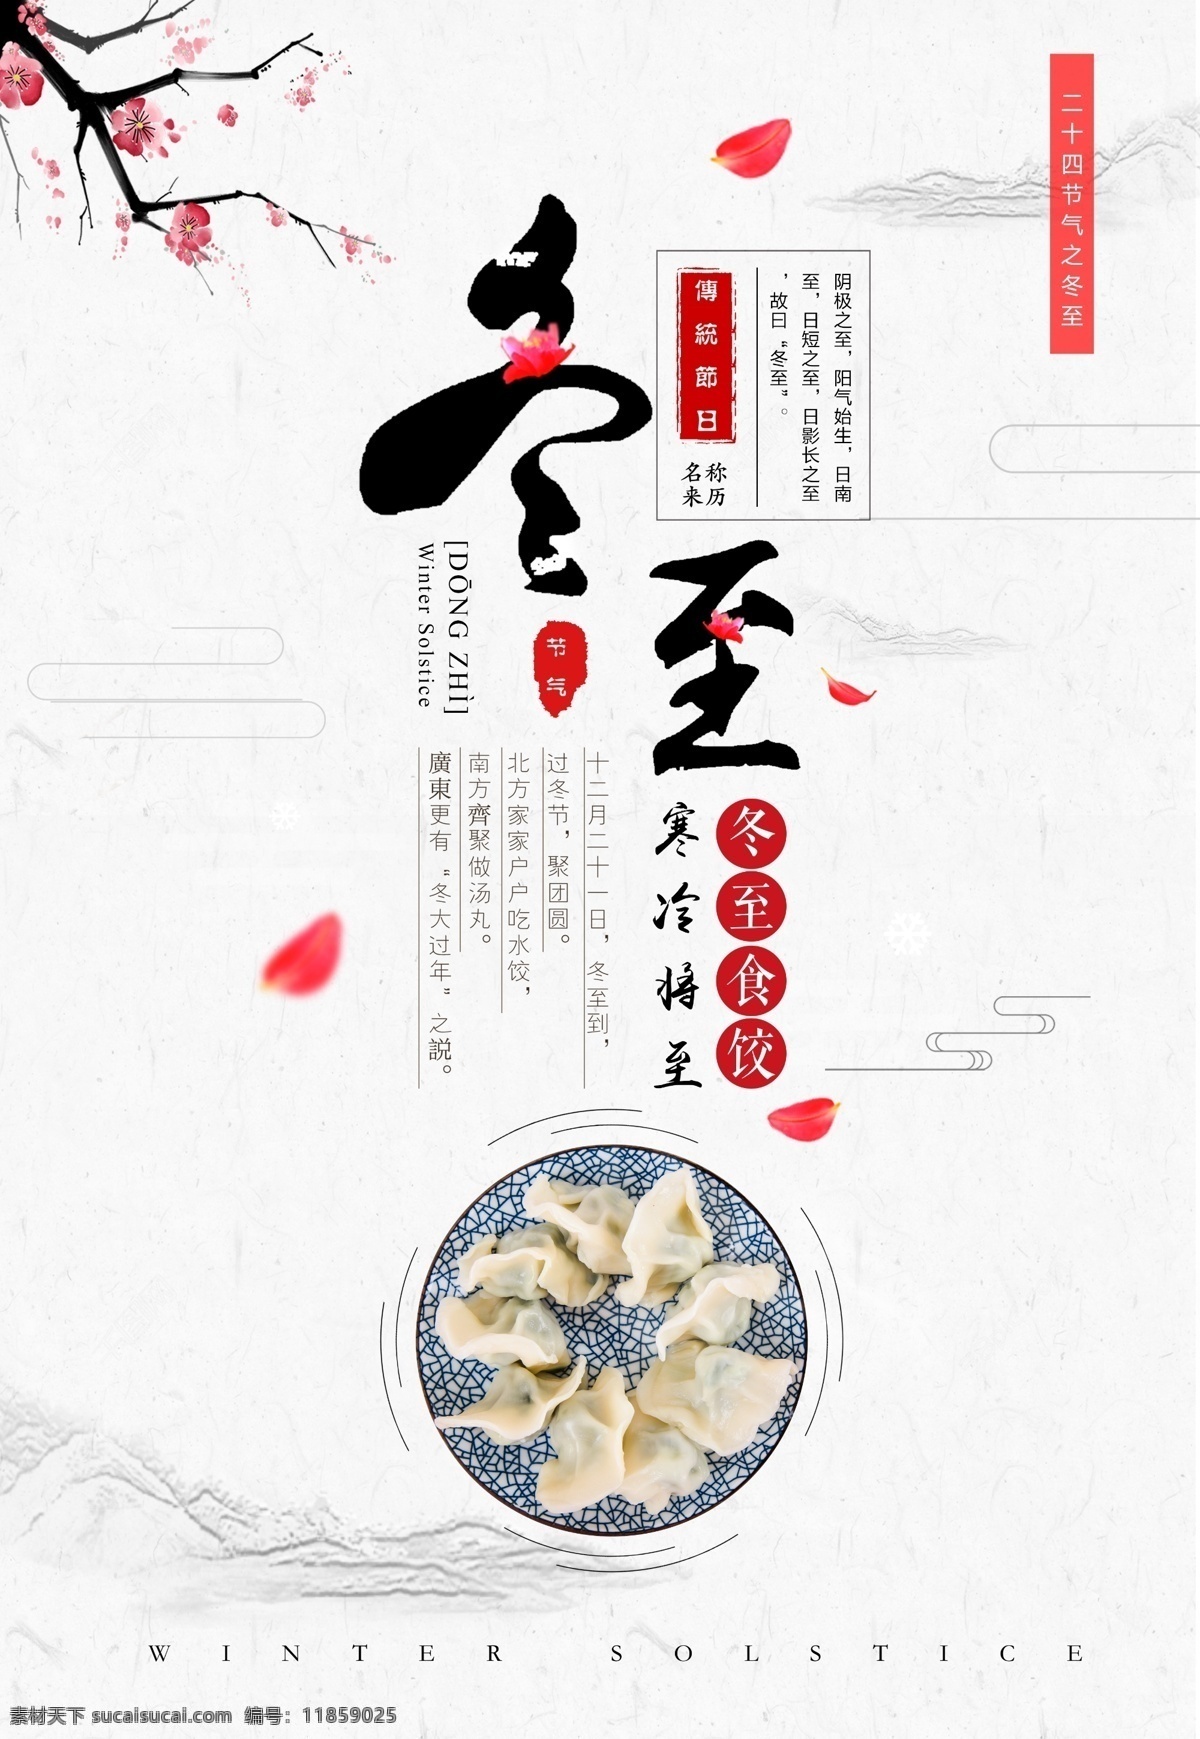 冬至节 立冬 节日 活动图片 饺子 活动 头伏吃饺子 传统节日